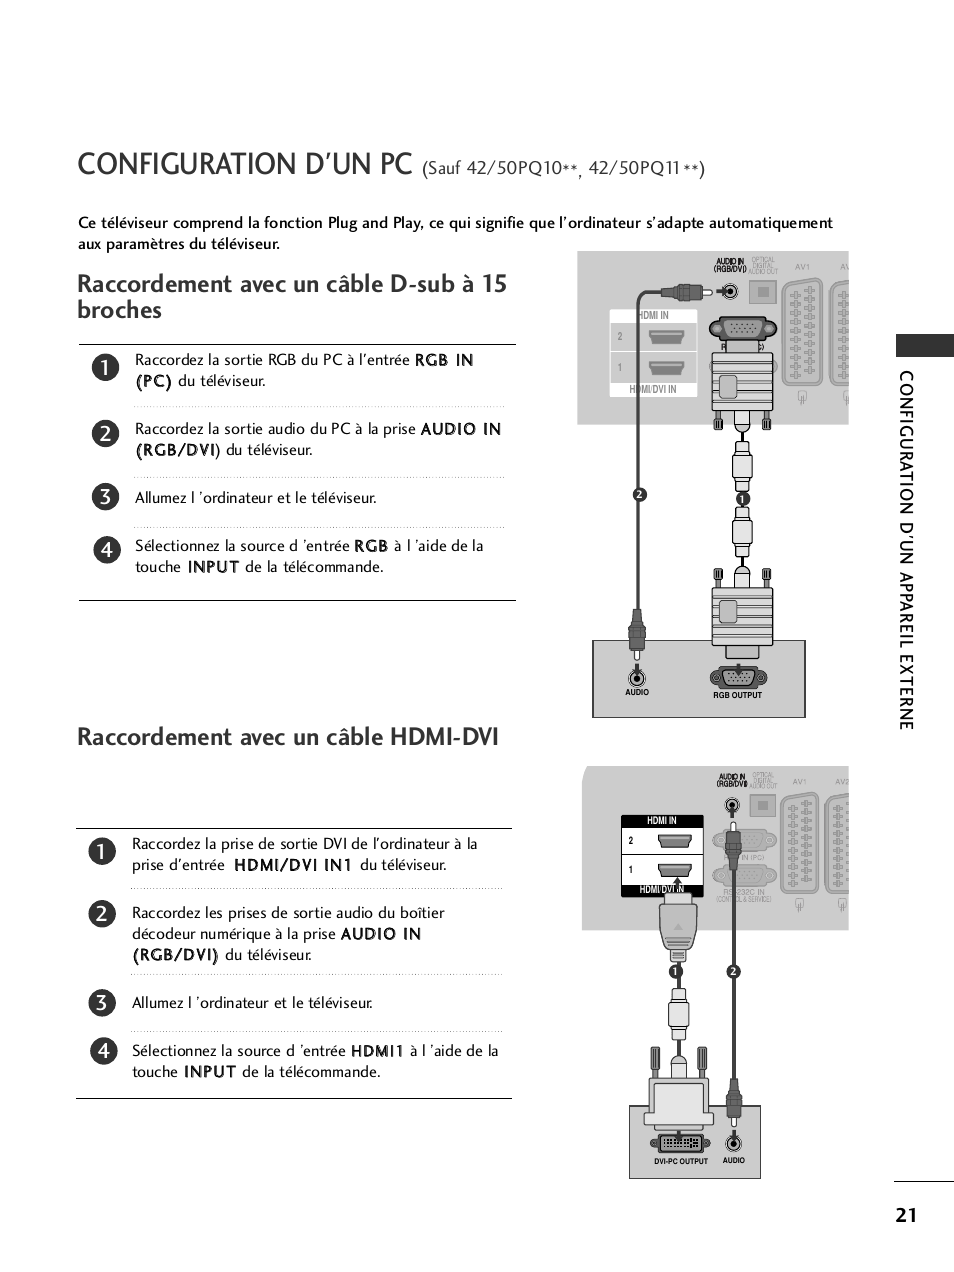 Configuration d'un pc, Raccordement avec un câble d-sub à 15 broches, Raccordement avec un câble hdmi-dvi | LG 50PQ6000 Manuel d'utilisation | Page 23 / 124